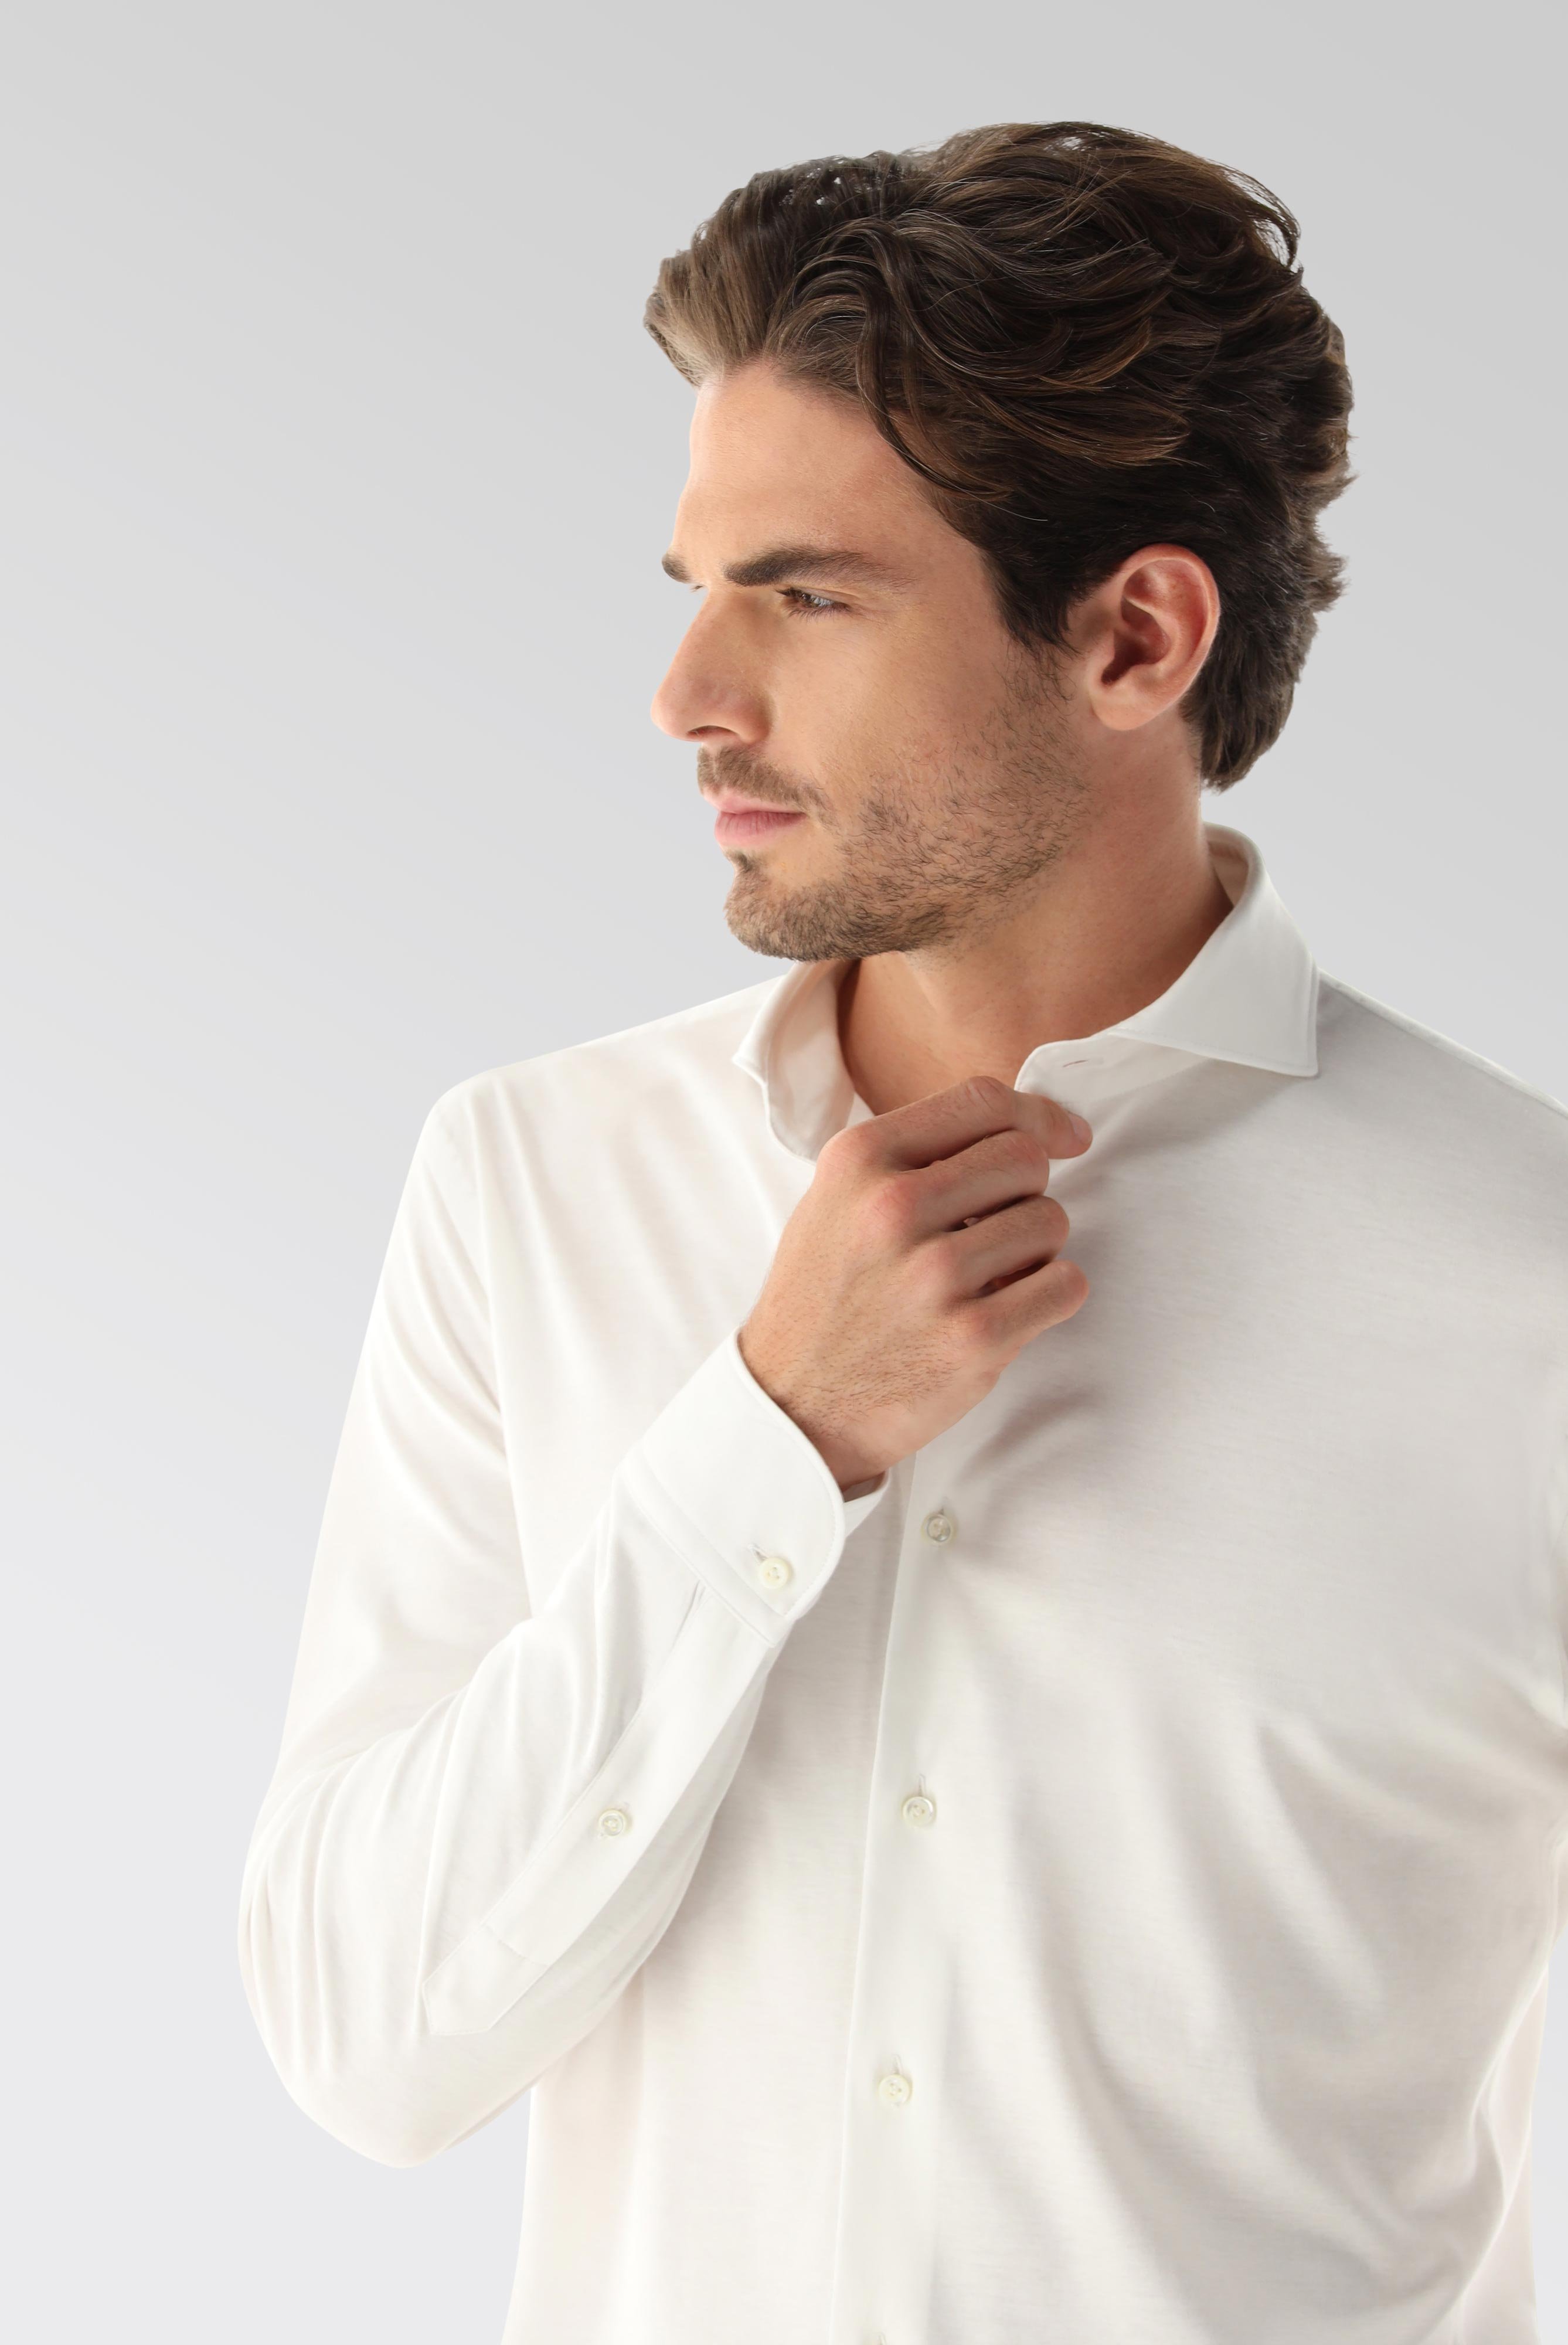 Bügelleichte Hemden+Jersey Hemd mit glänzender Optik Tailor Fit+20.1683.UC.180031.000.XL